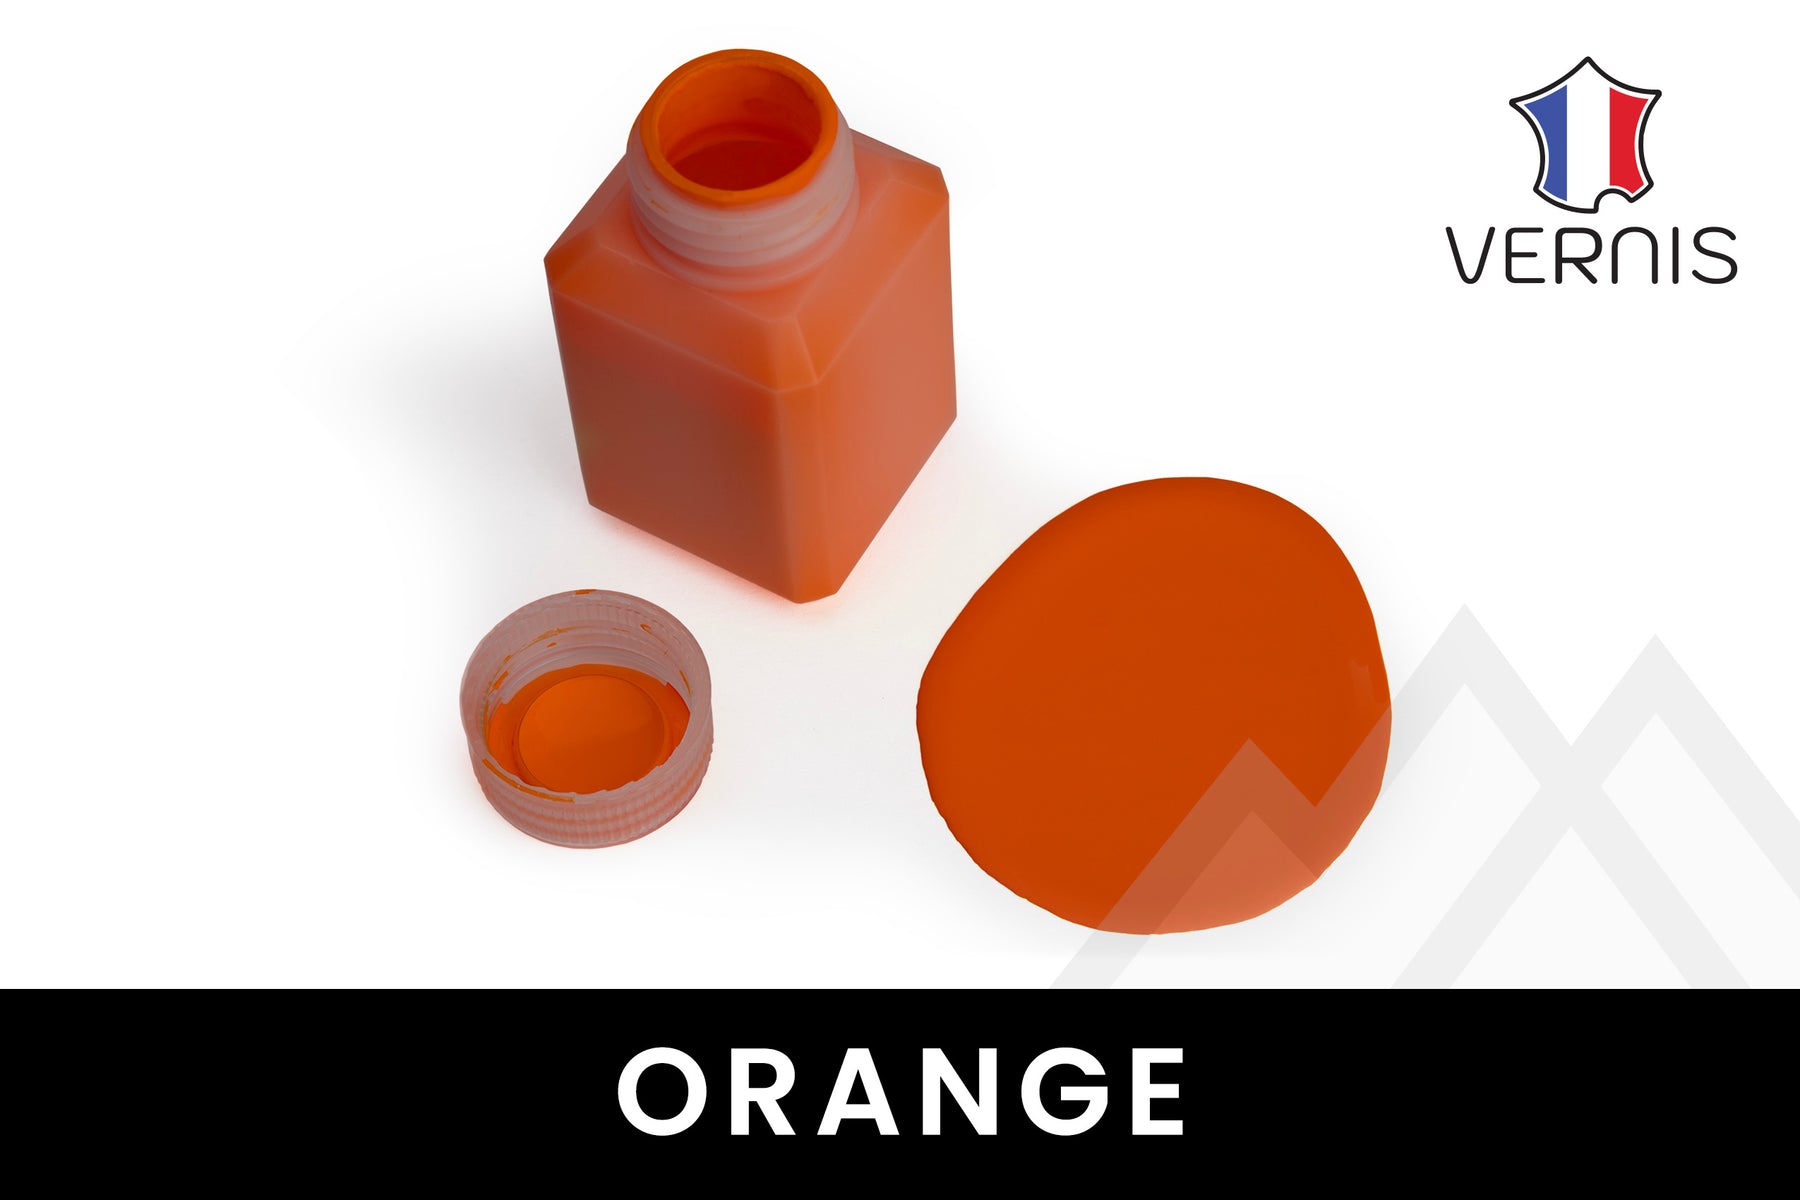 Vernis 🇫🇷 - Heatable Edge Paint (Matte) - 50 Colors!